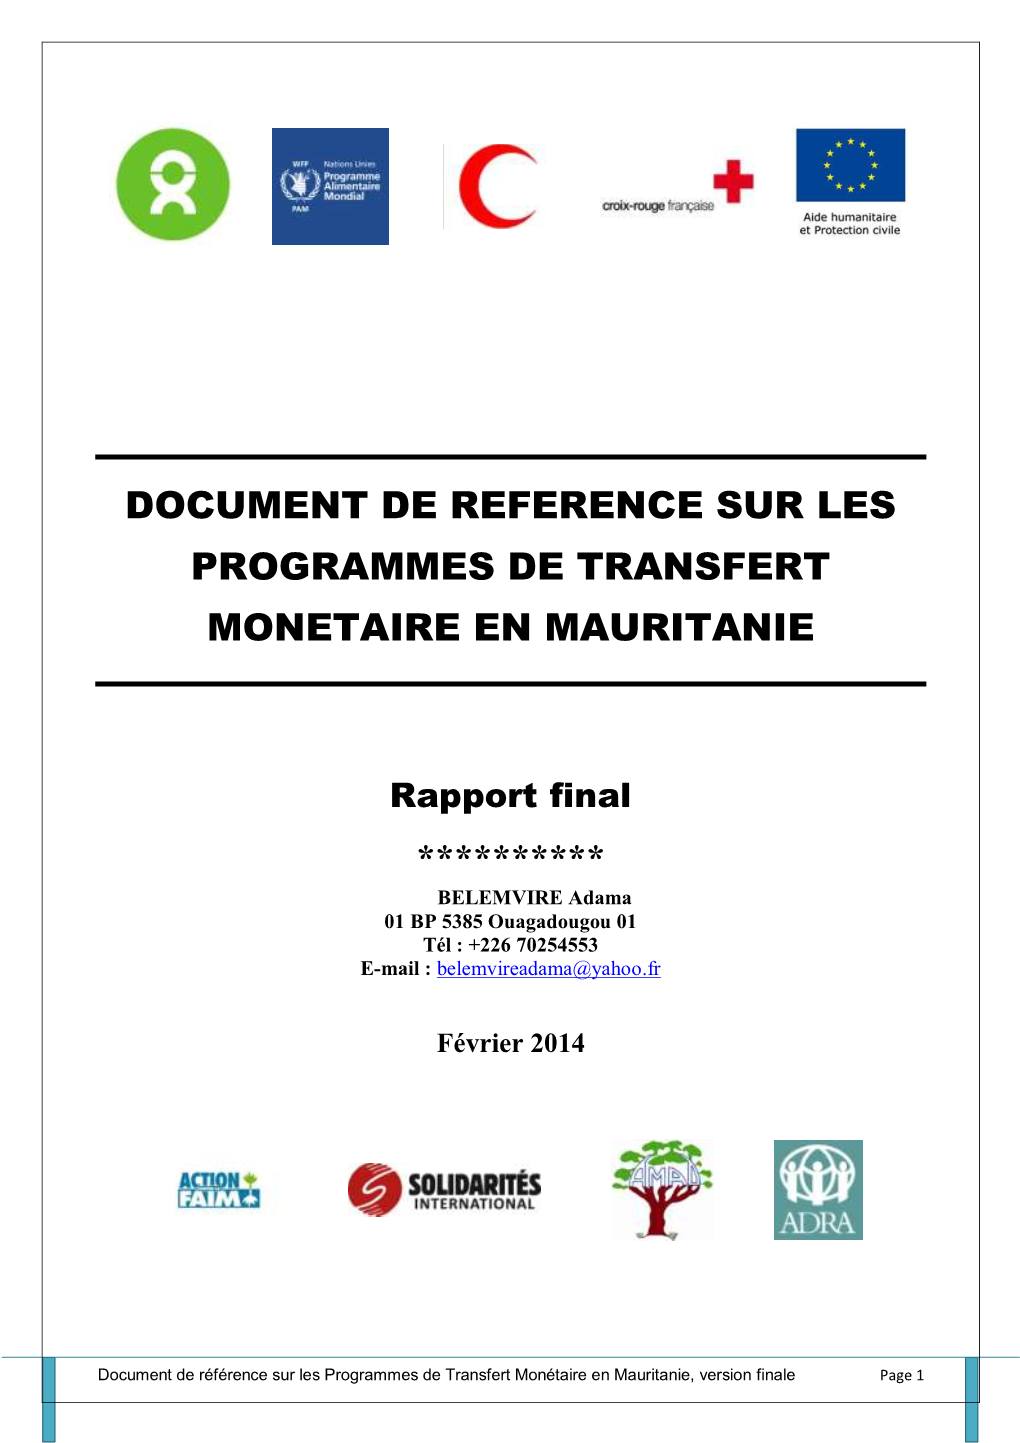 Document De Reference Sur Les Programmes De Transfert Monetaire En Mauritanie